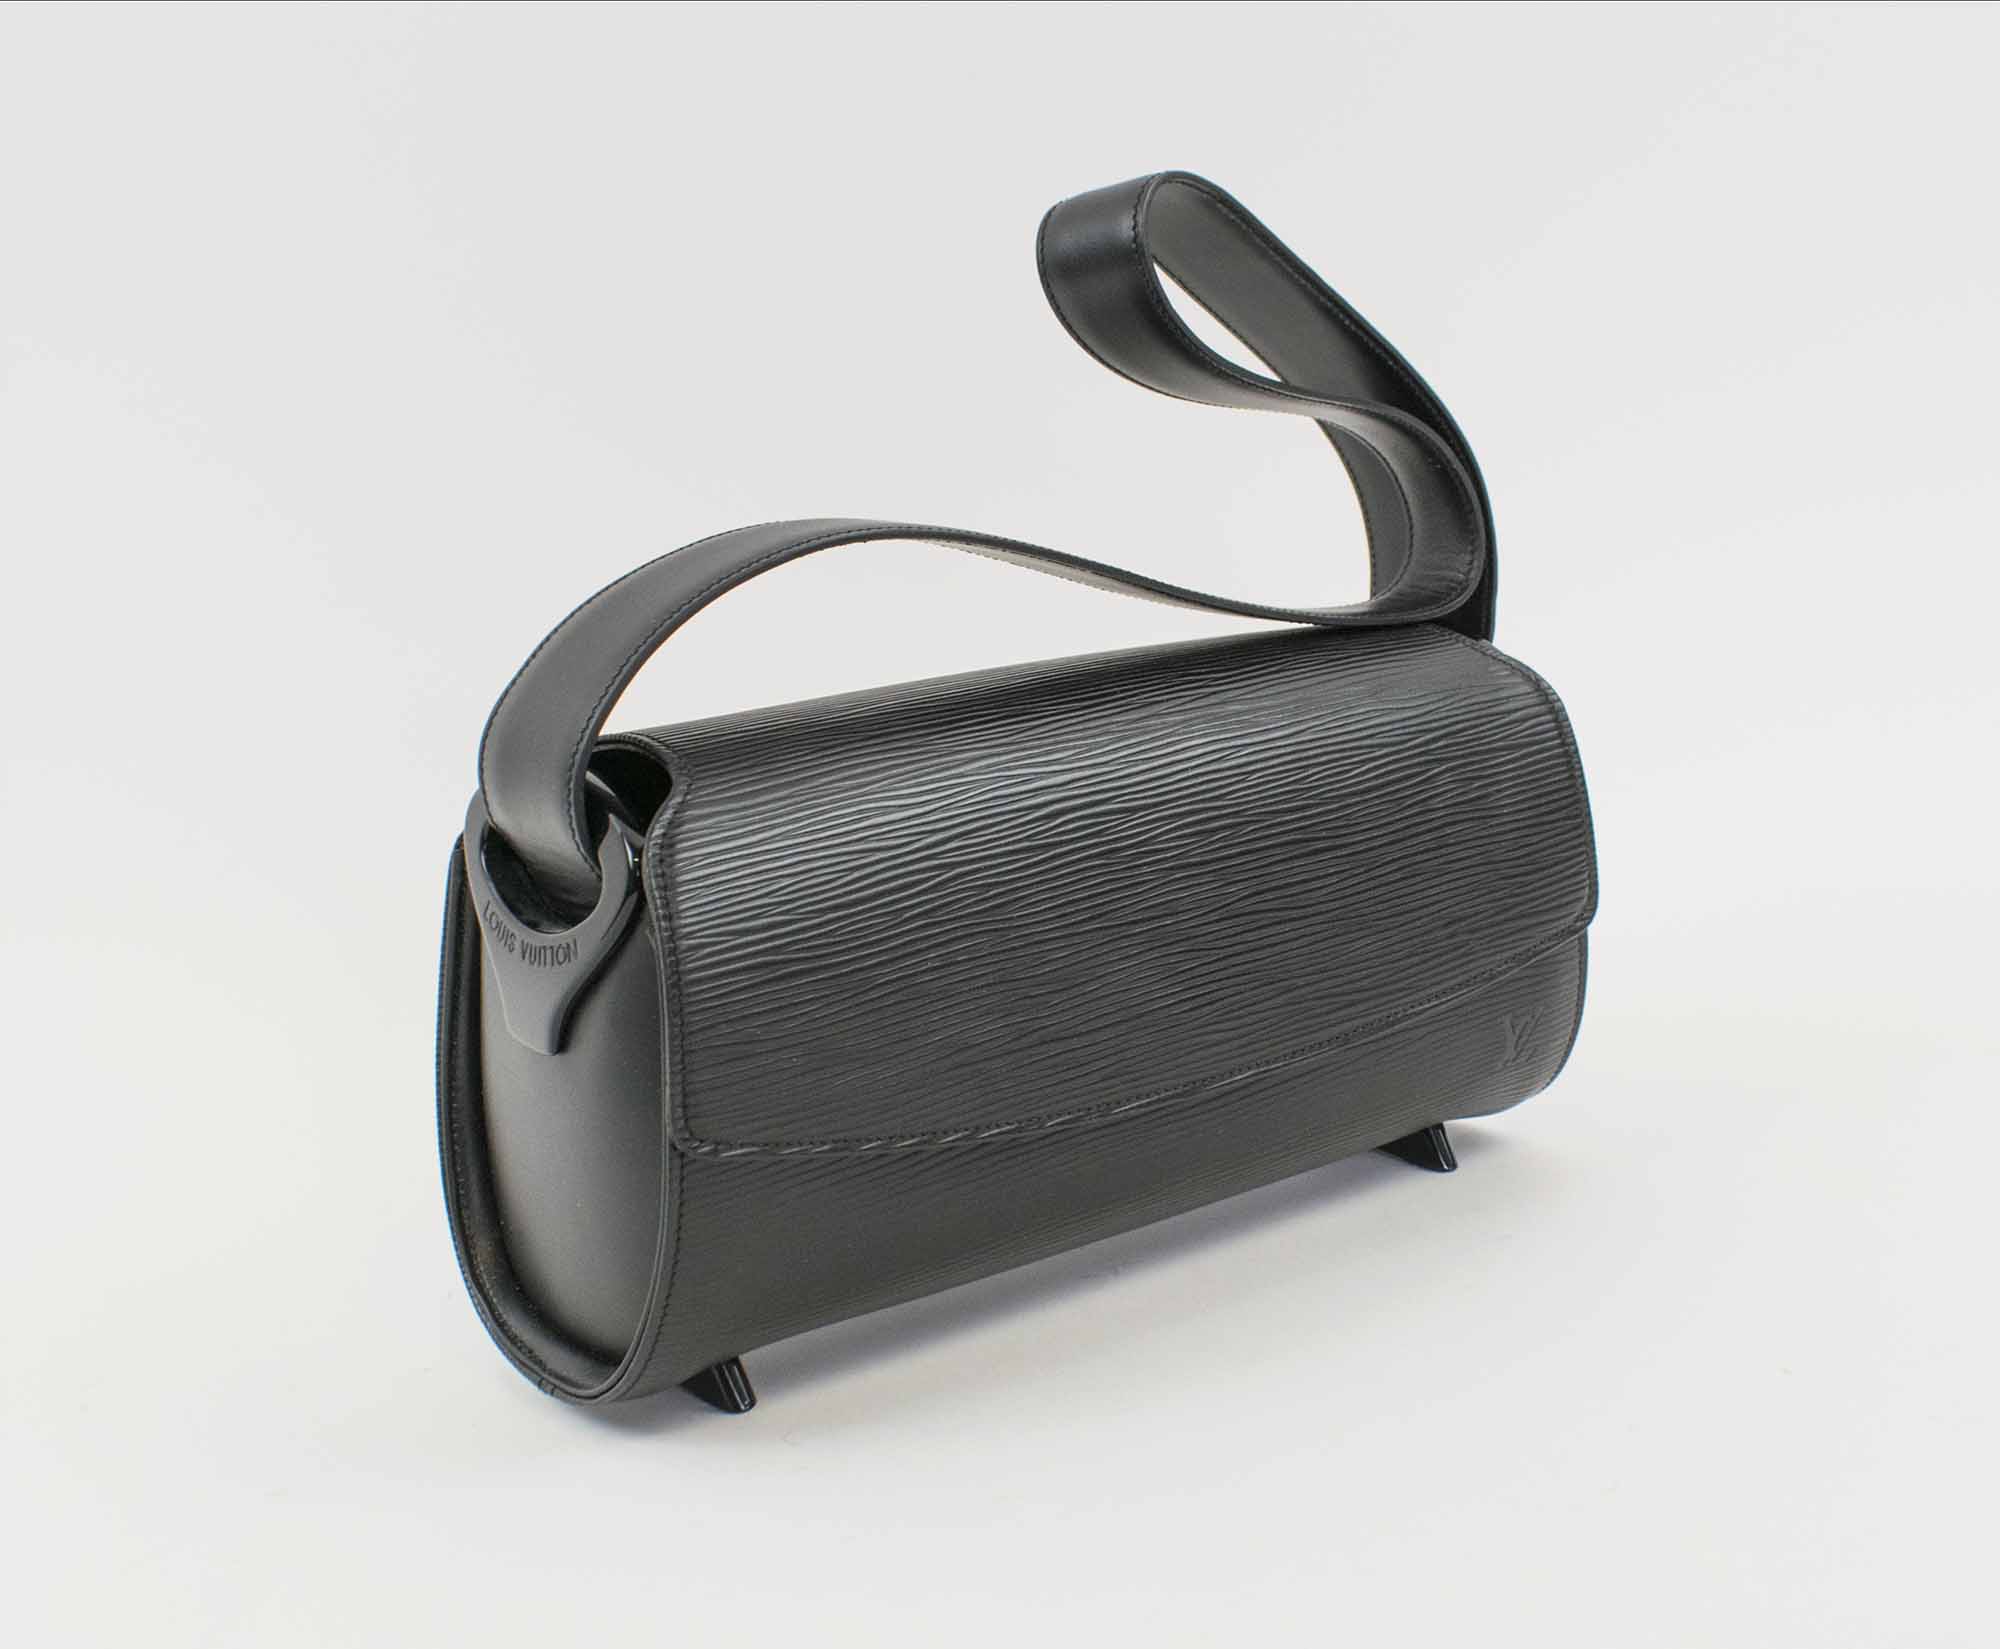 Louis Vuitton Sénateur pouch in black epi leather